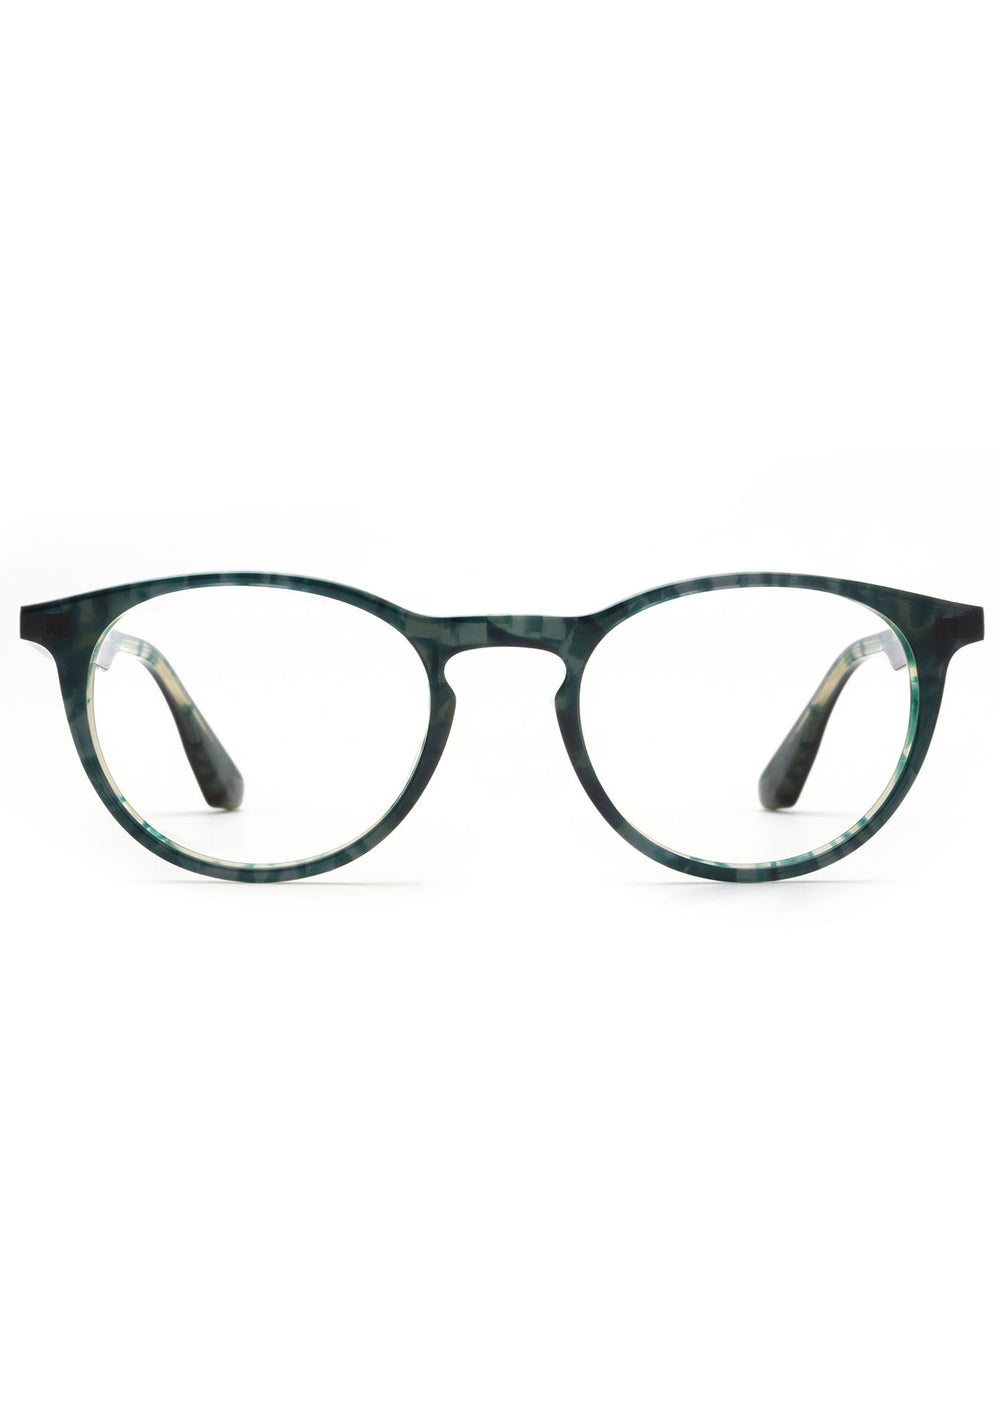 KREWE BAXTER | Grey Ivy Handcrafted, luxury green acetate eyeglasses